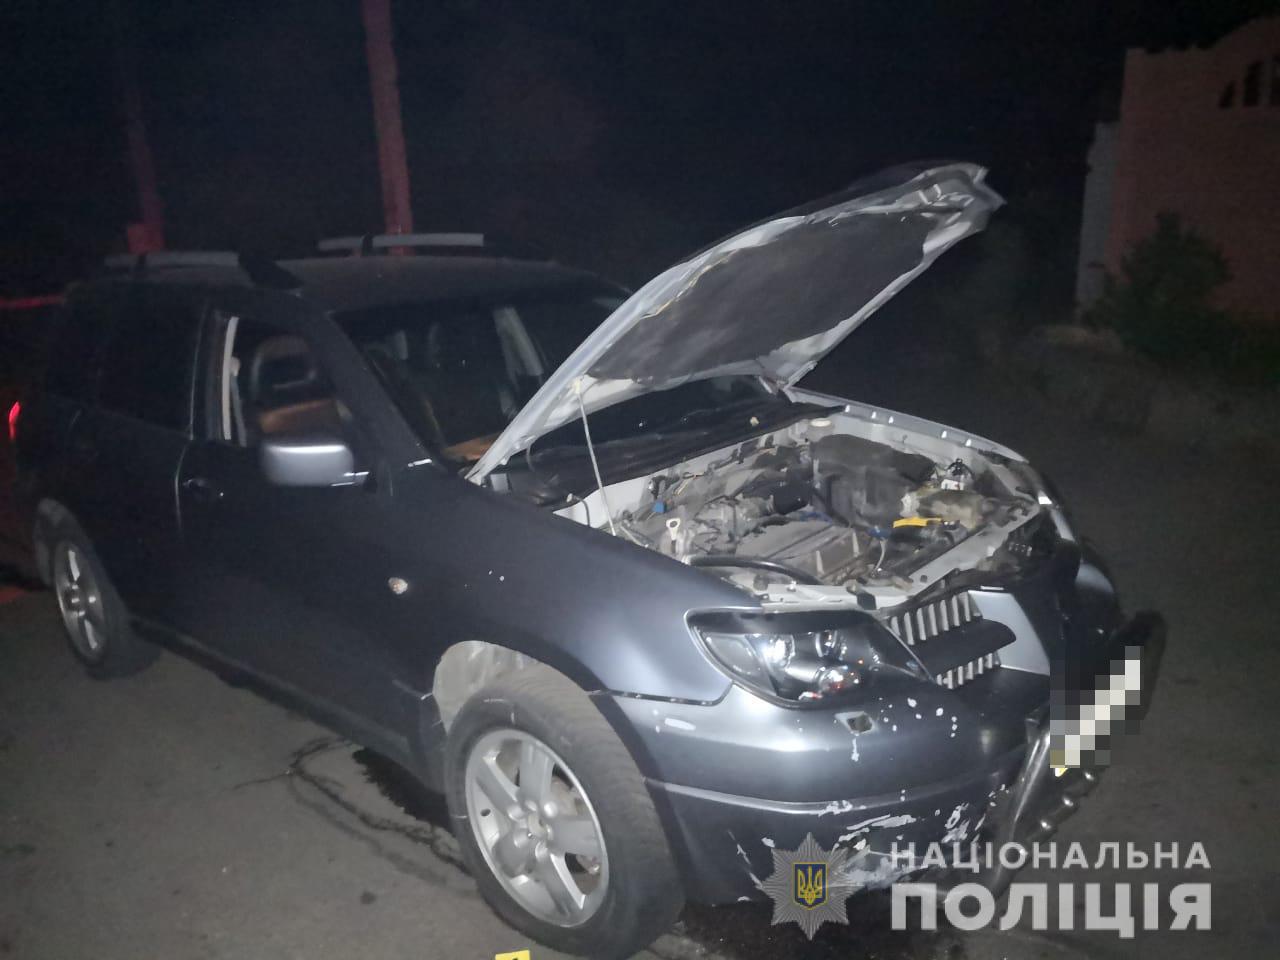 В Никополе взорвался автомобиль, есть пострадавшие. Фото: Нацполиция Днепропетровской области